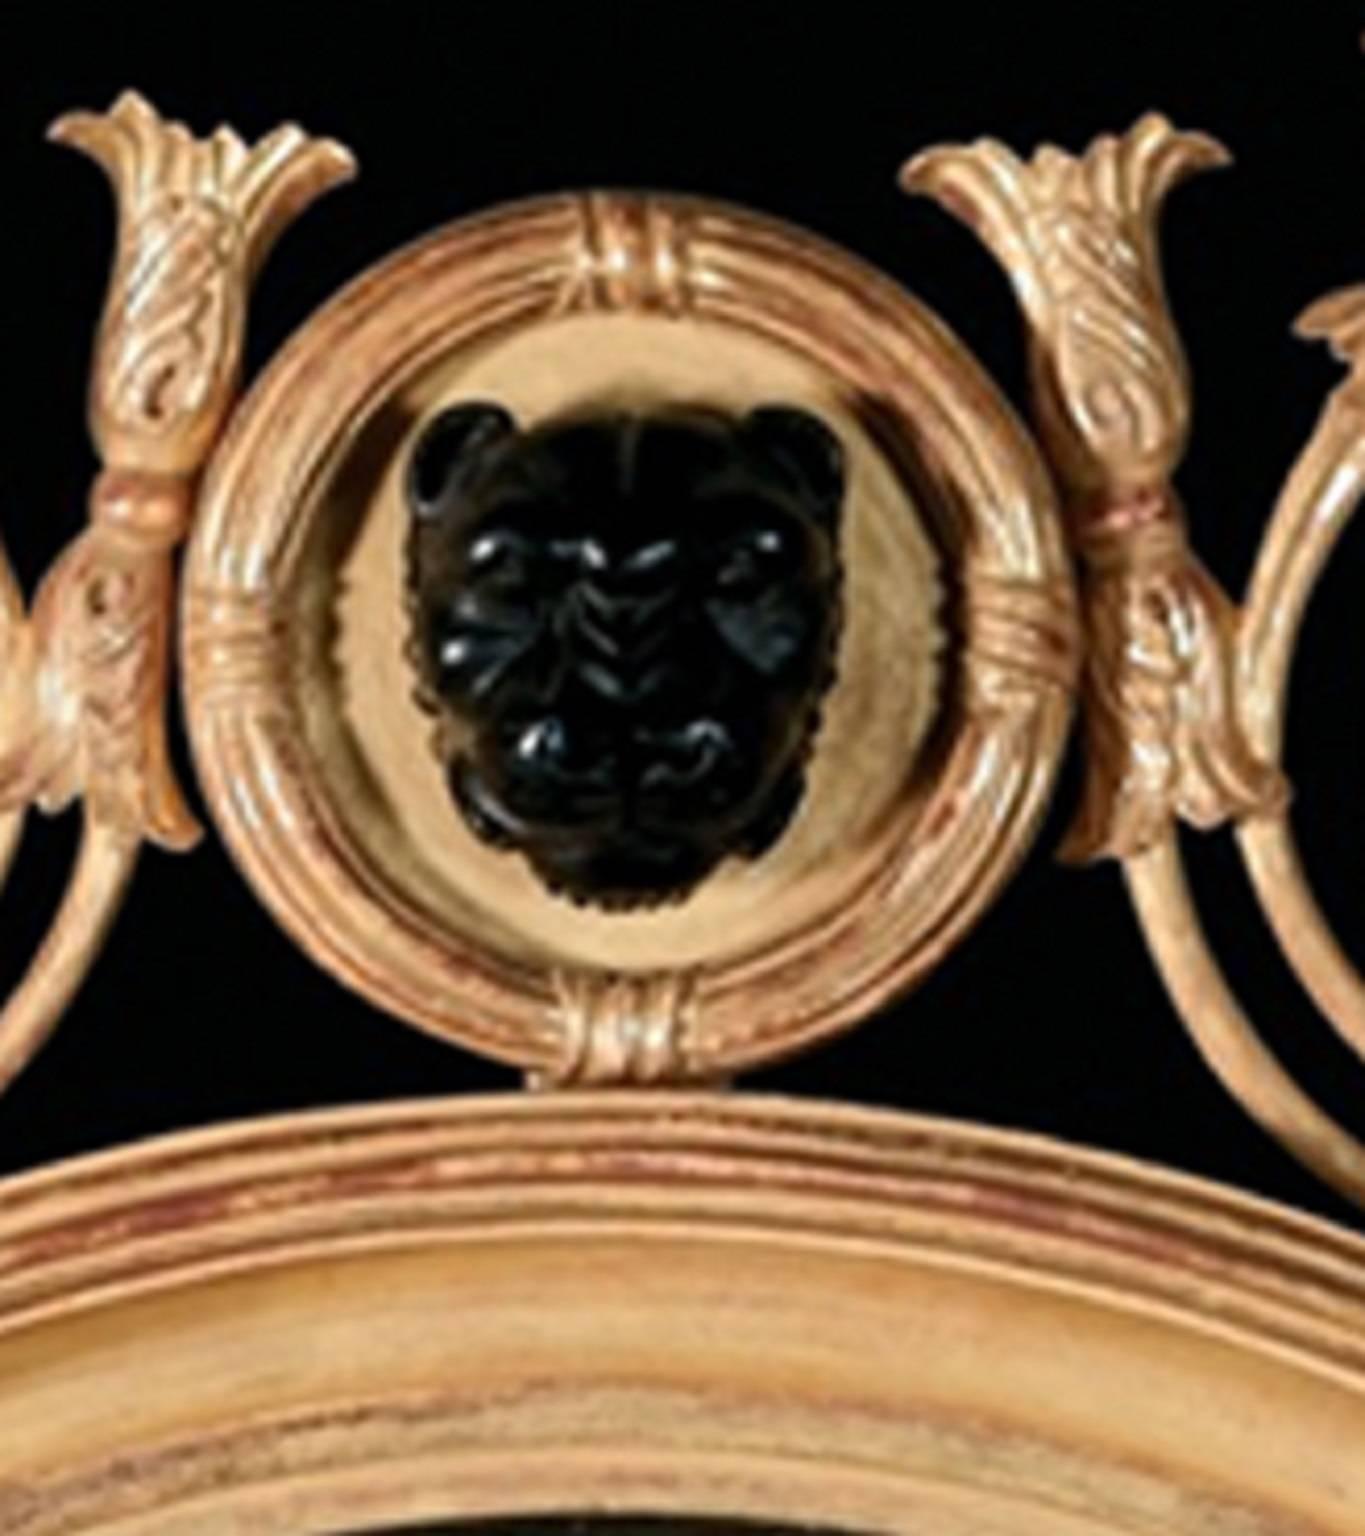 Dieser runde, konvexe Glasspiegel zeigt eine Fülle von Regency-Dekorationen. Der geschnitzte äußere Rahmen aus vergoldetem Holz hat einen geriffelten, ebonisierten inneren Rahmen und eine Krone, die von einer ebonisierten Leopardenmaske in einem mit